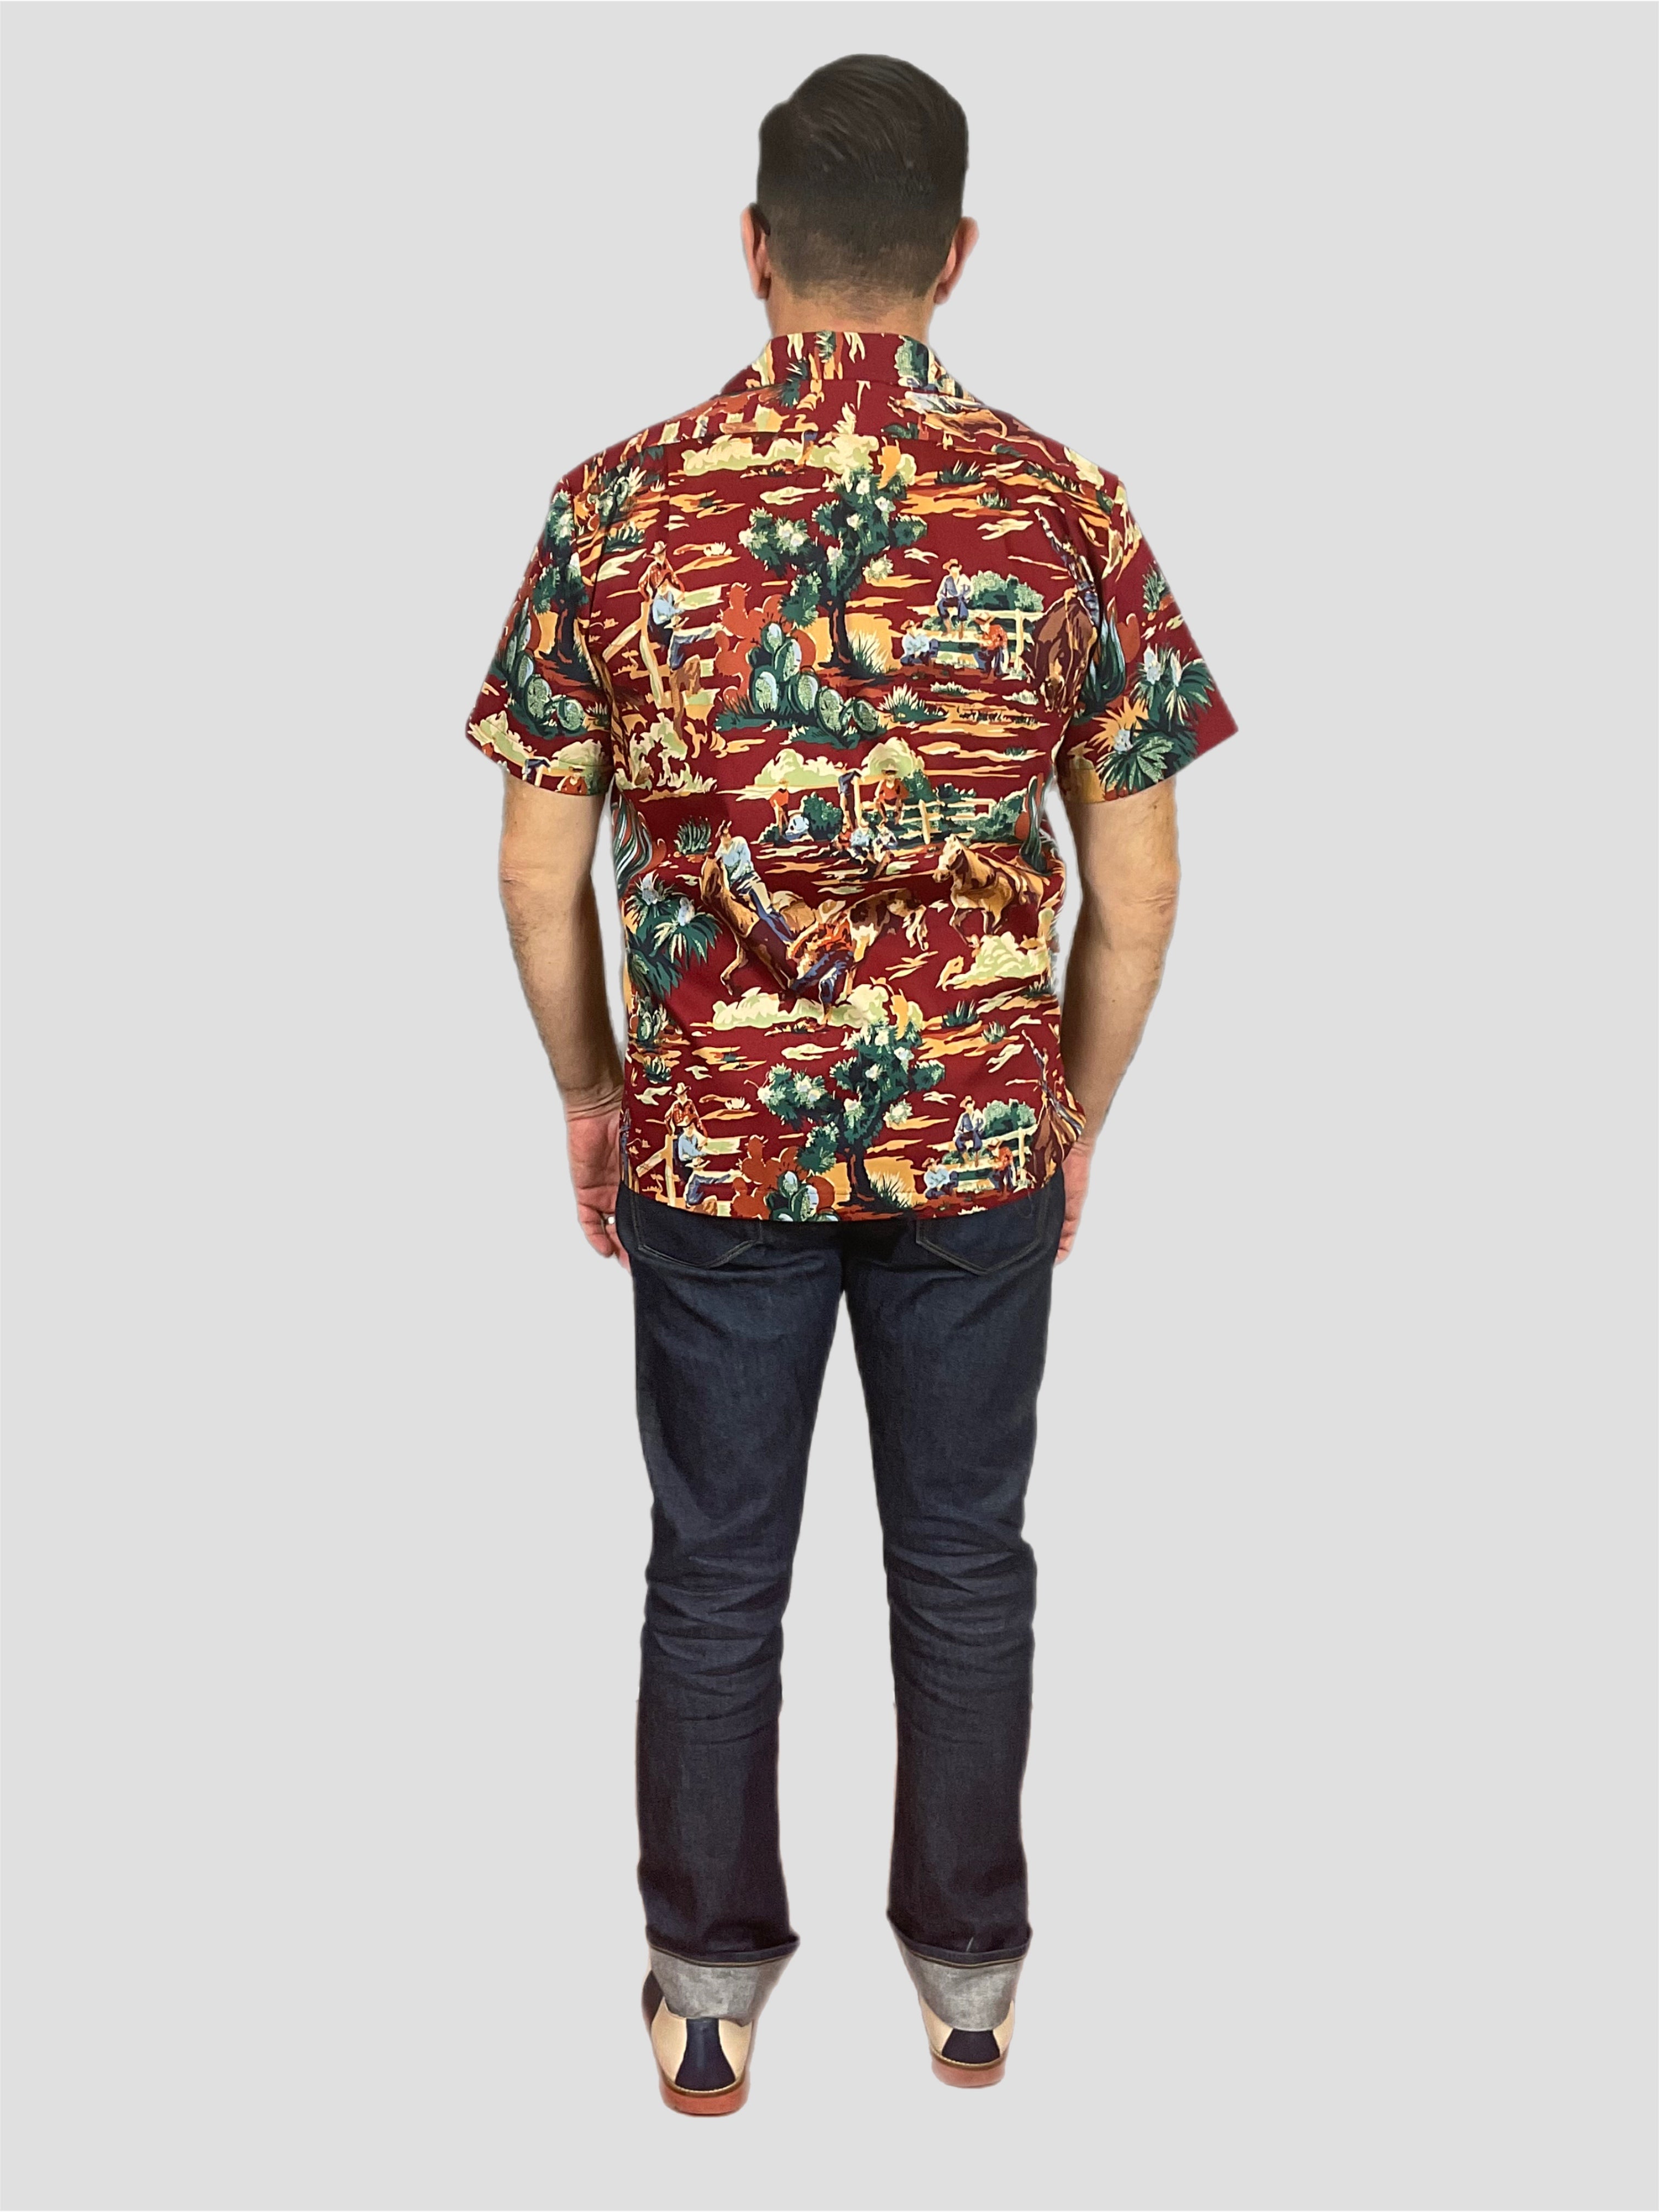 Aloha shirt wild west